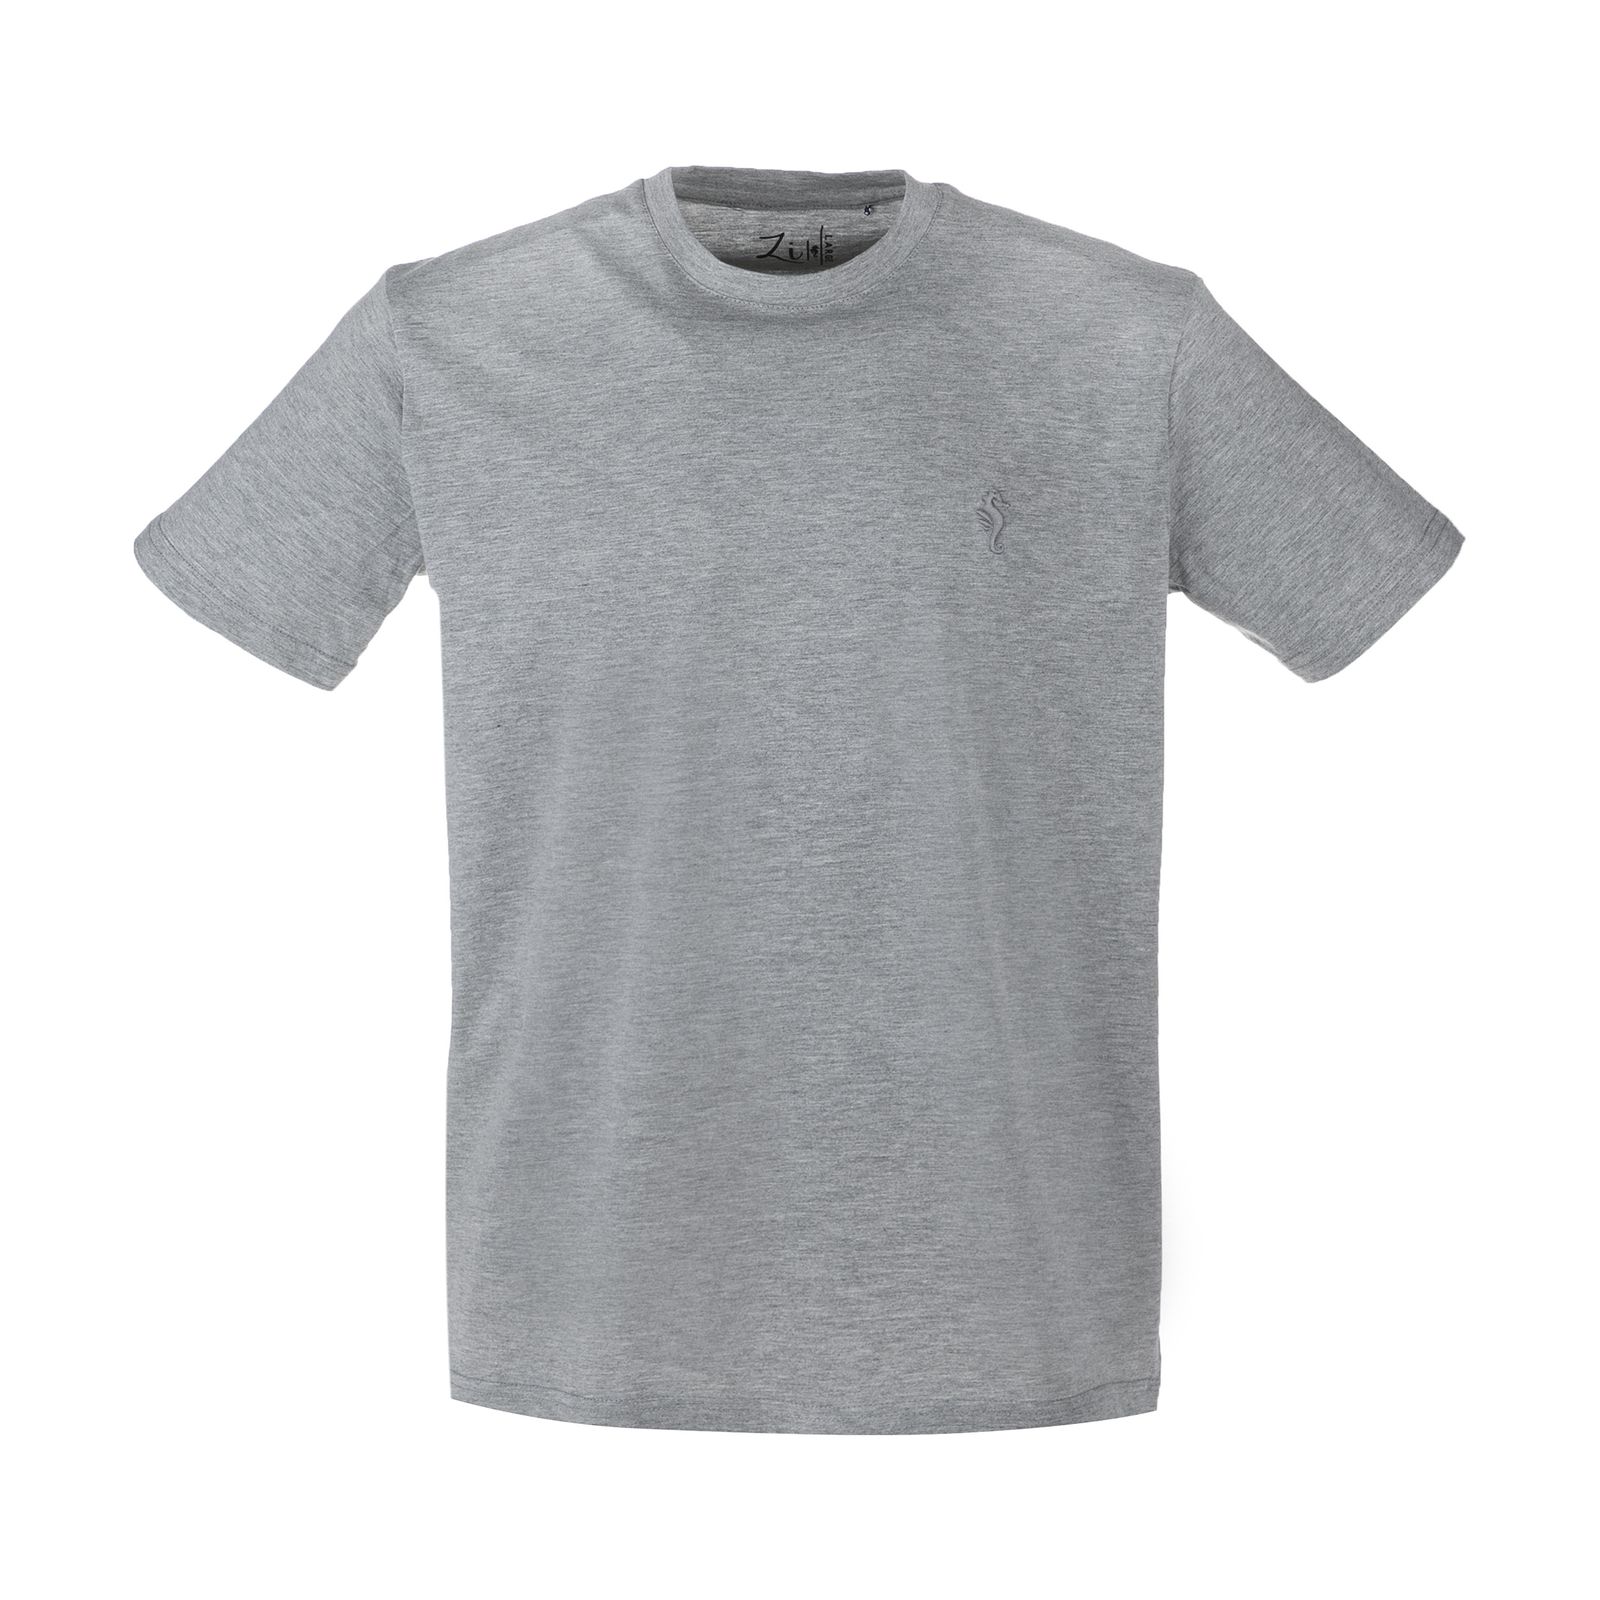 تی شرت مردانه زی سا مدل 153113193 -  - 1